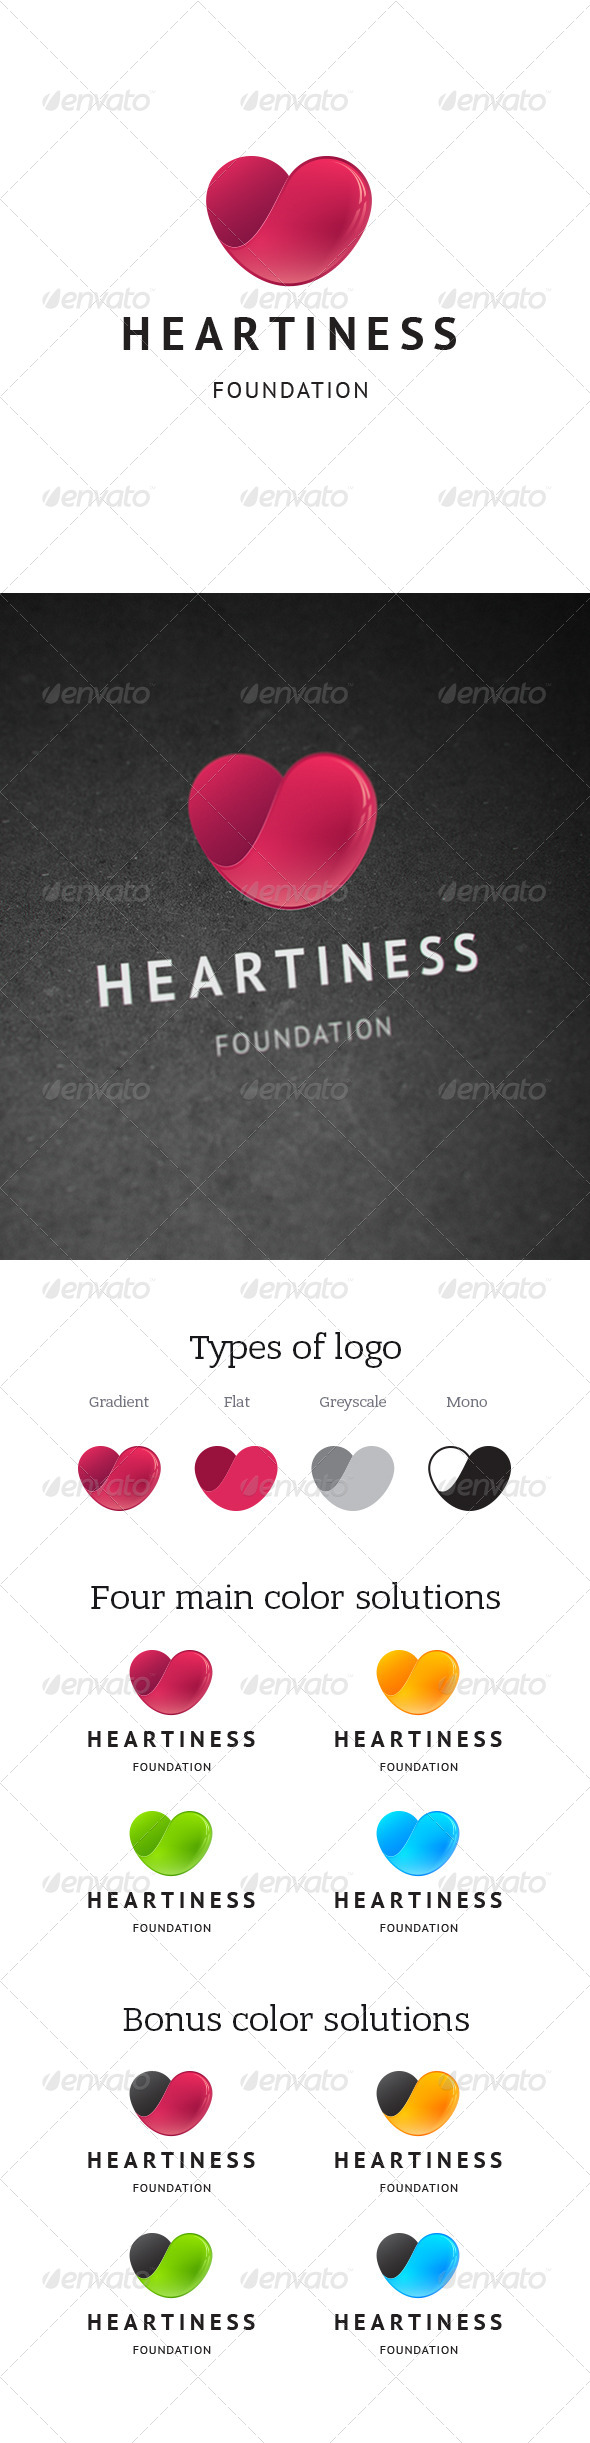 Heartiness Charity Foundation Logo - Symbols Logo Templates